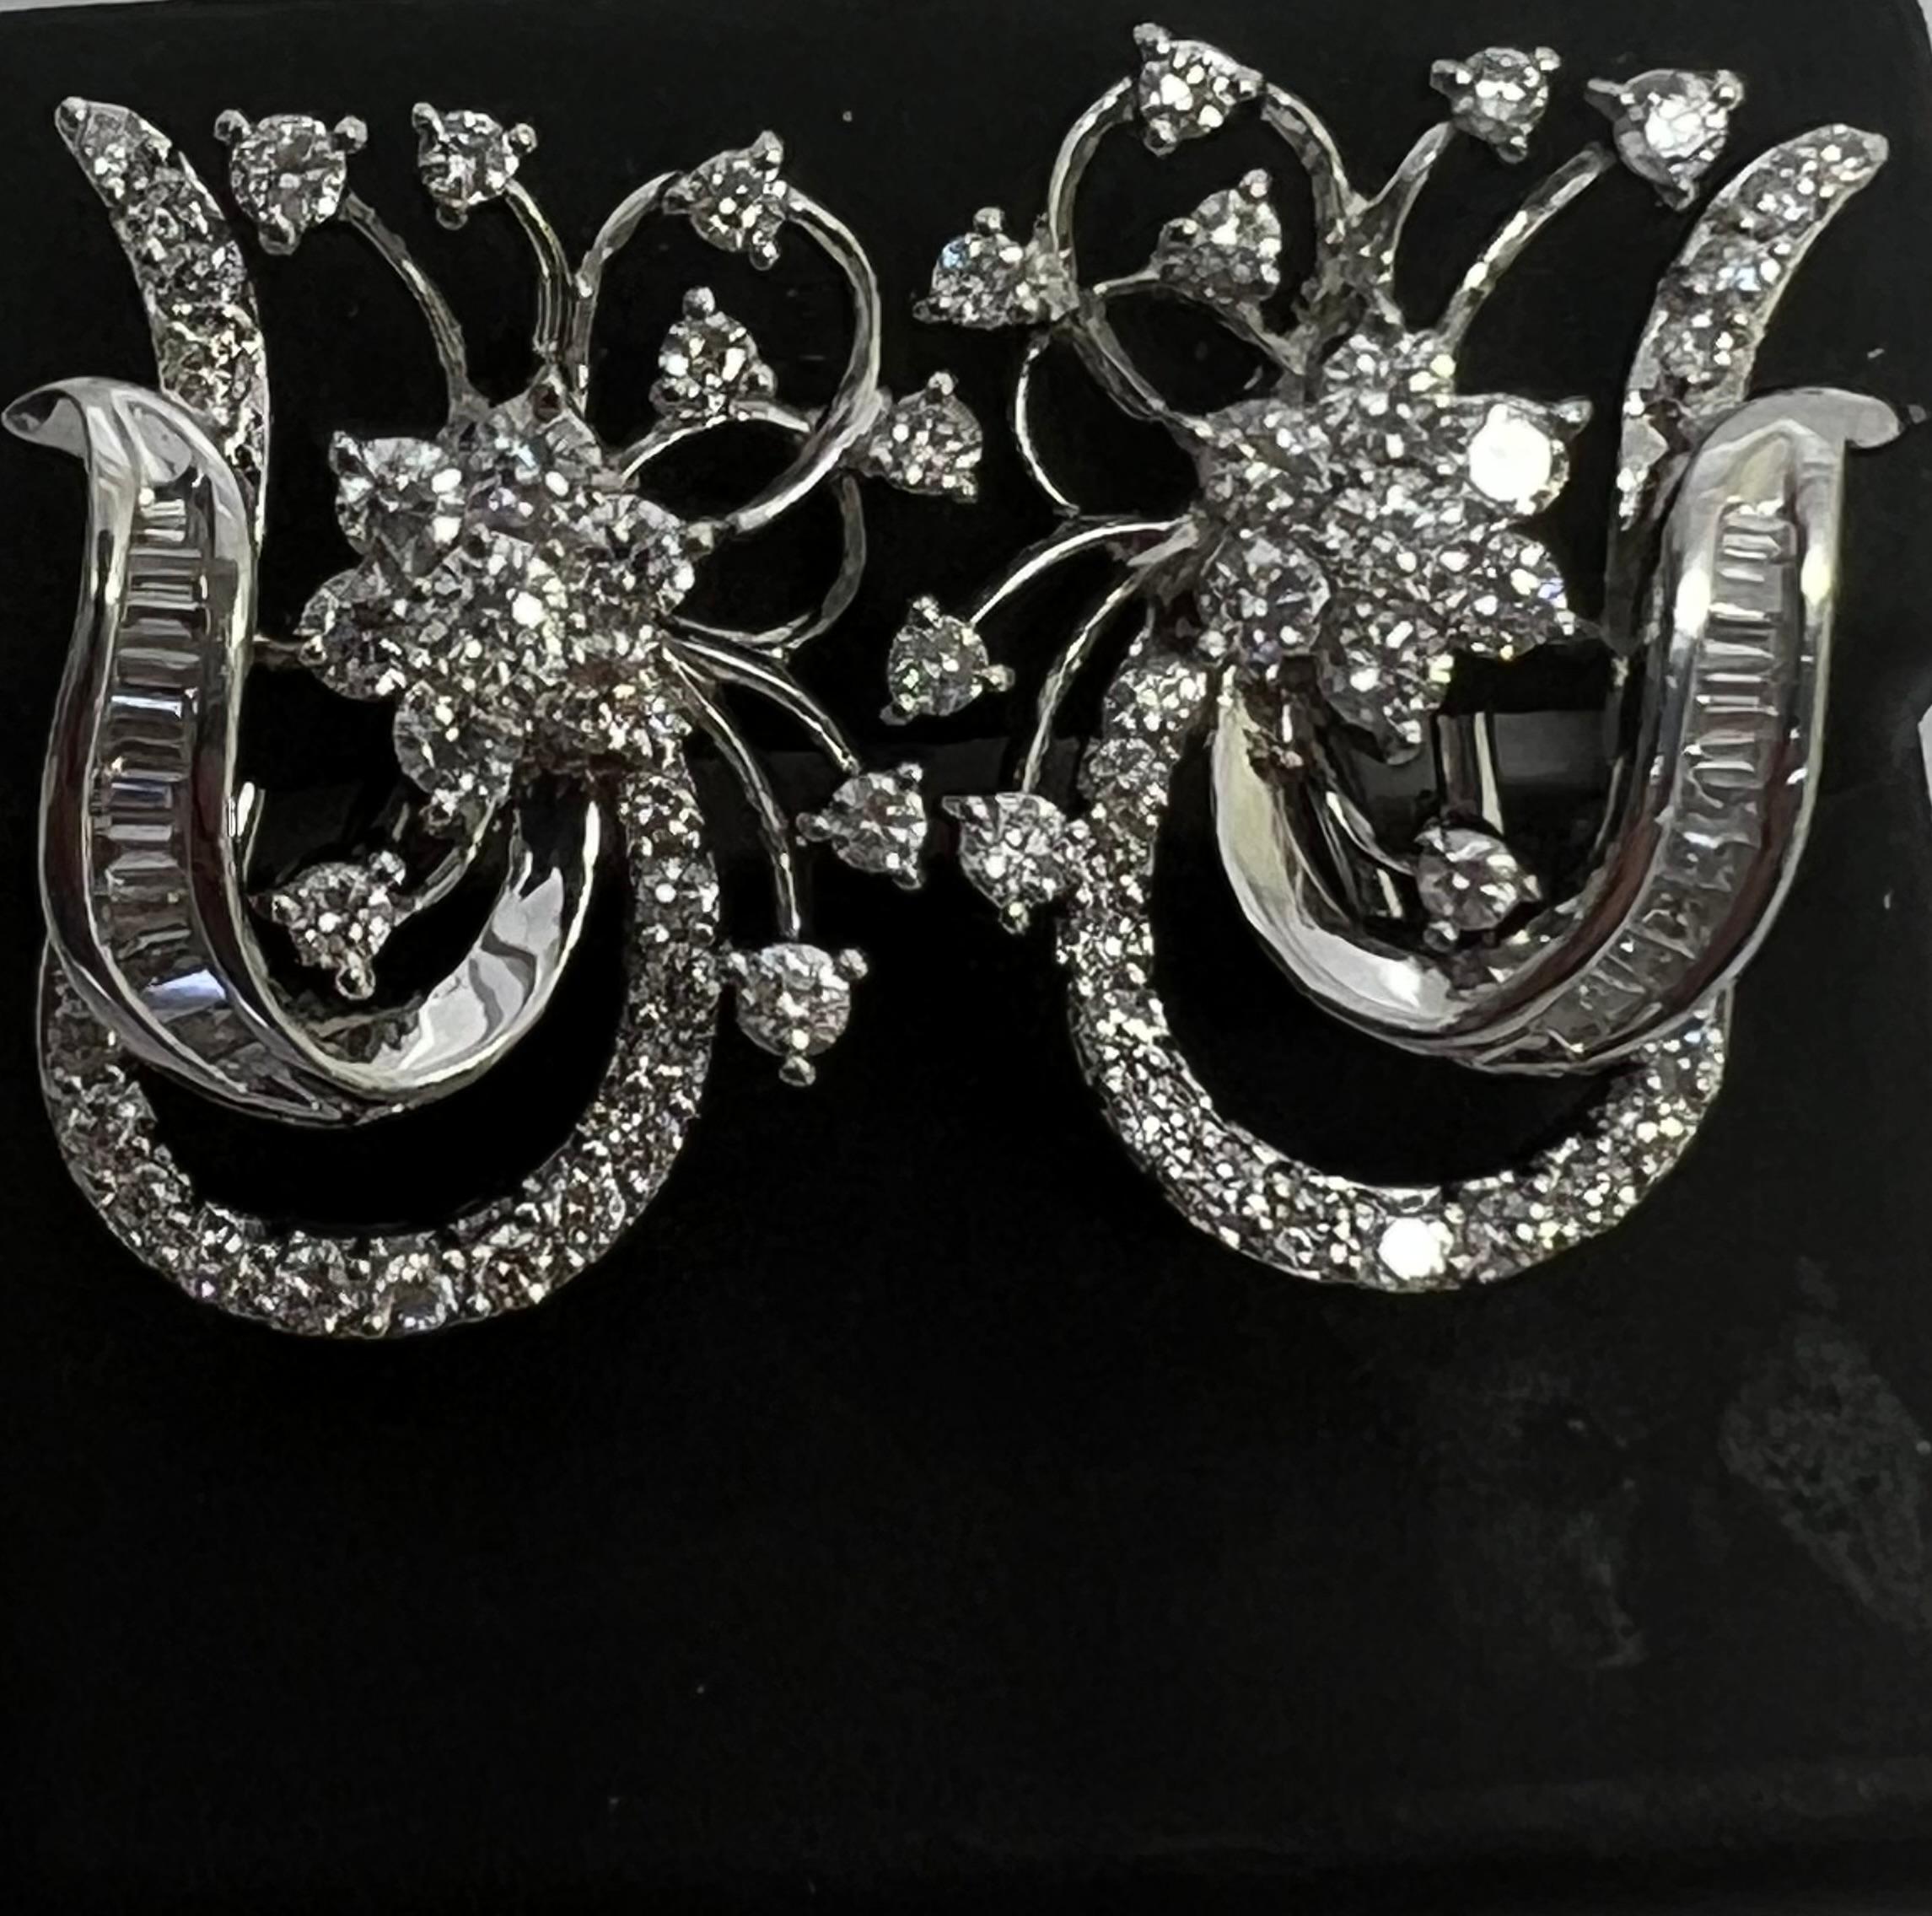 Peppen Sie Ihren Look mit diesen atemberaubenden 14K White Gold Diamond Flower Baguette Leaver Back Earrings auf. Die schöne, aus Weißgold gefertigte Blumenform verleiht jedem Outfit einen Hauch von Eleganz. Die natürlichen Diamanten im